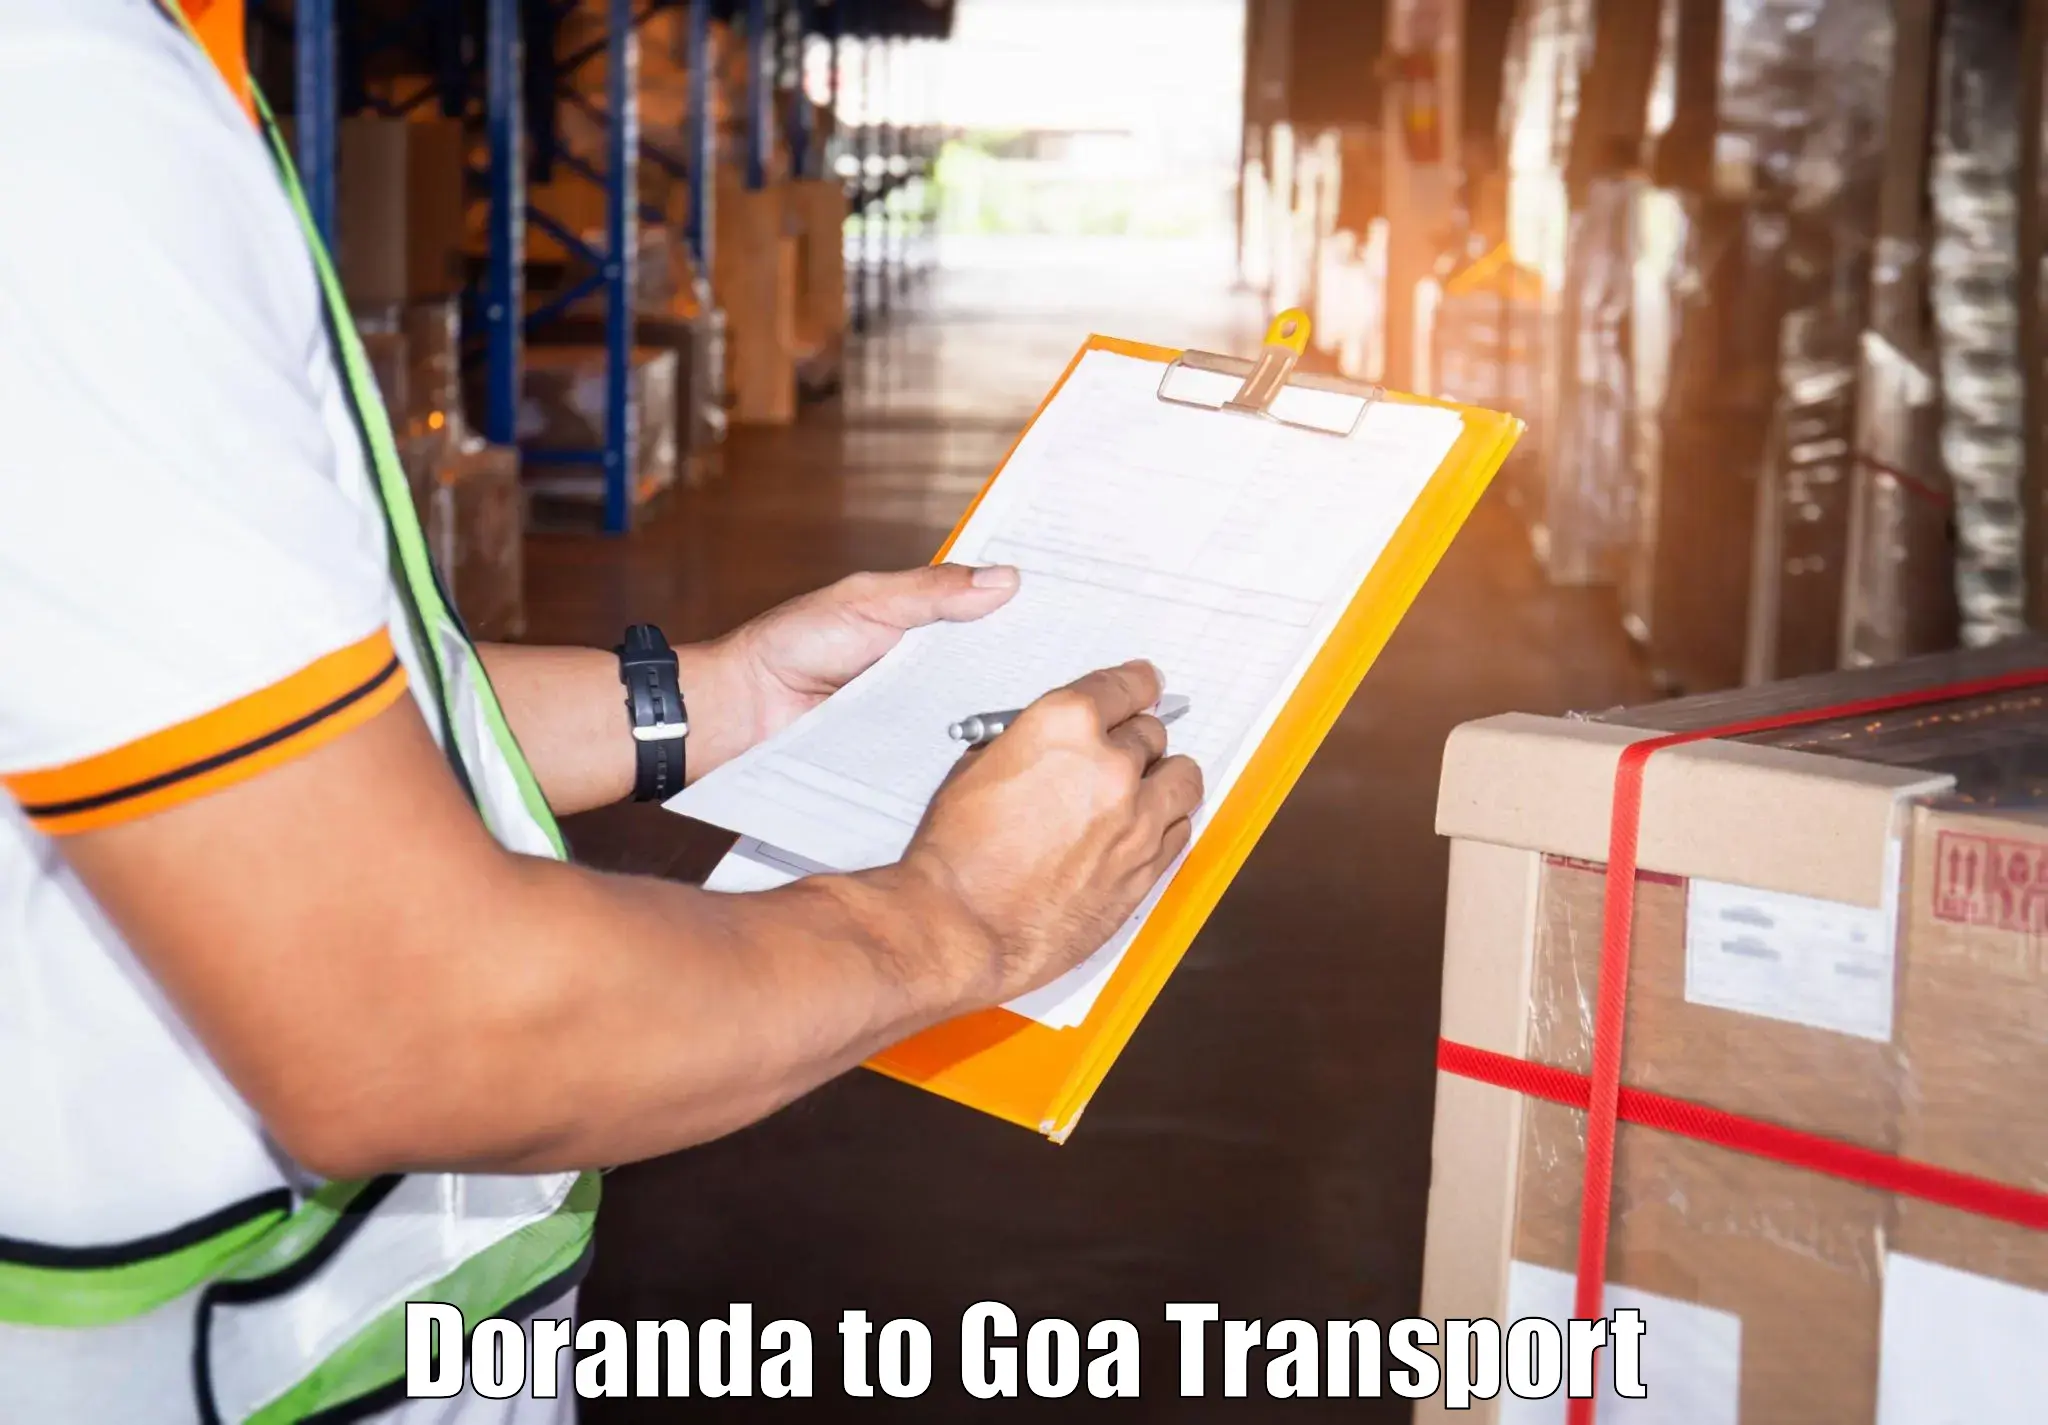 Transport in sharing in Doranda to Panjim